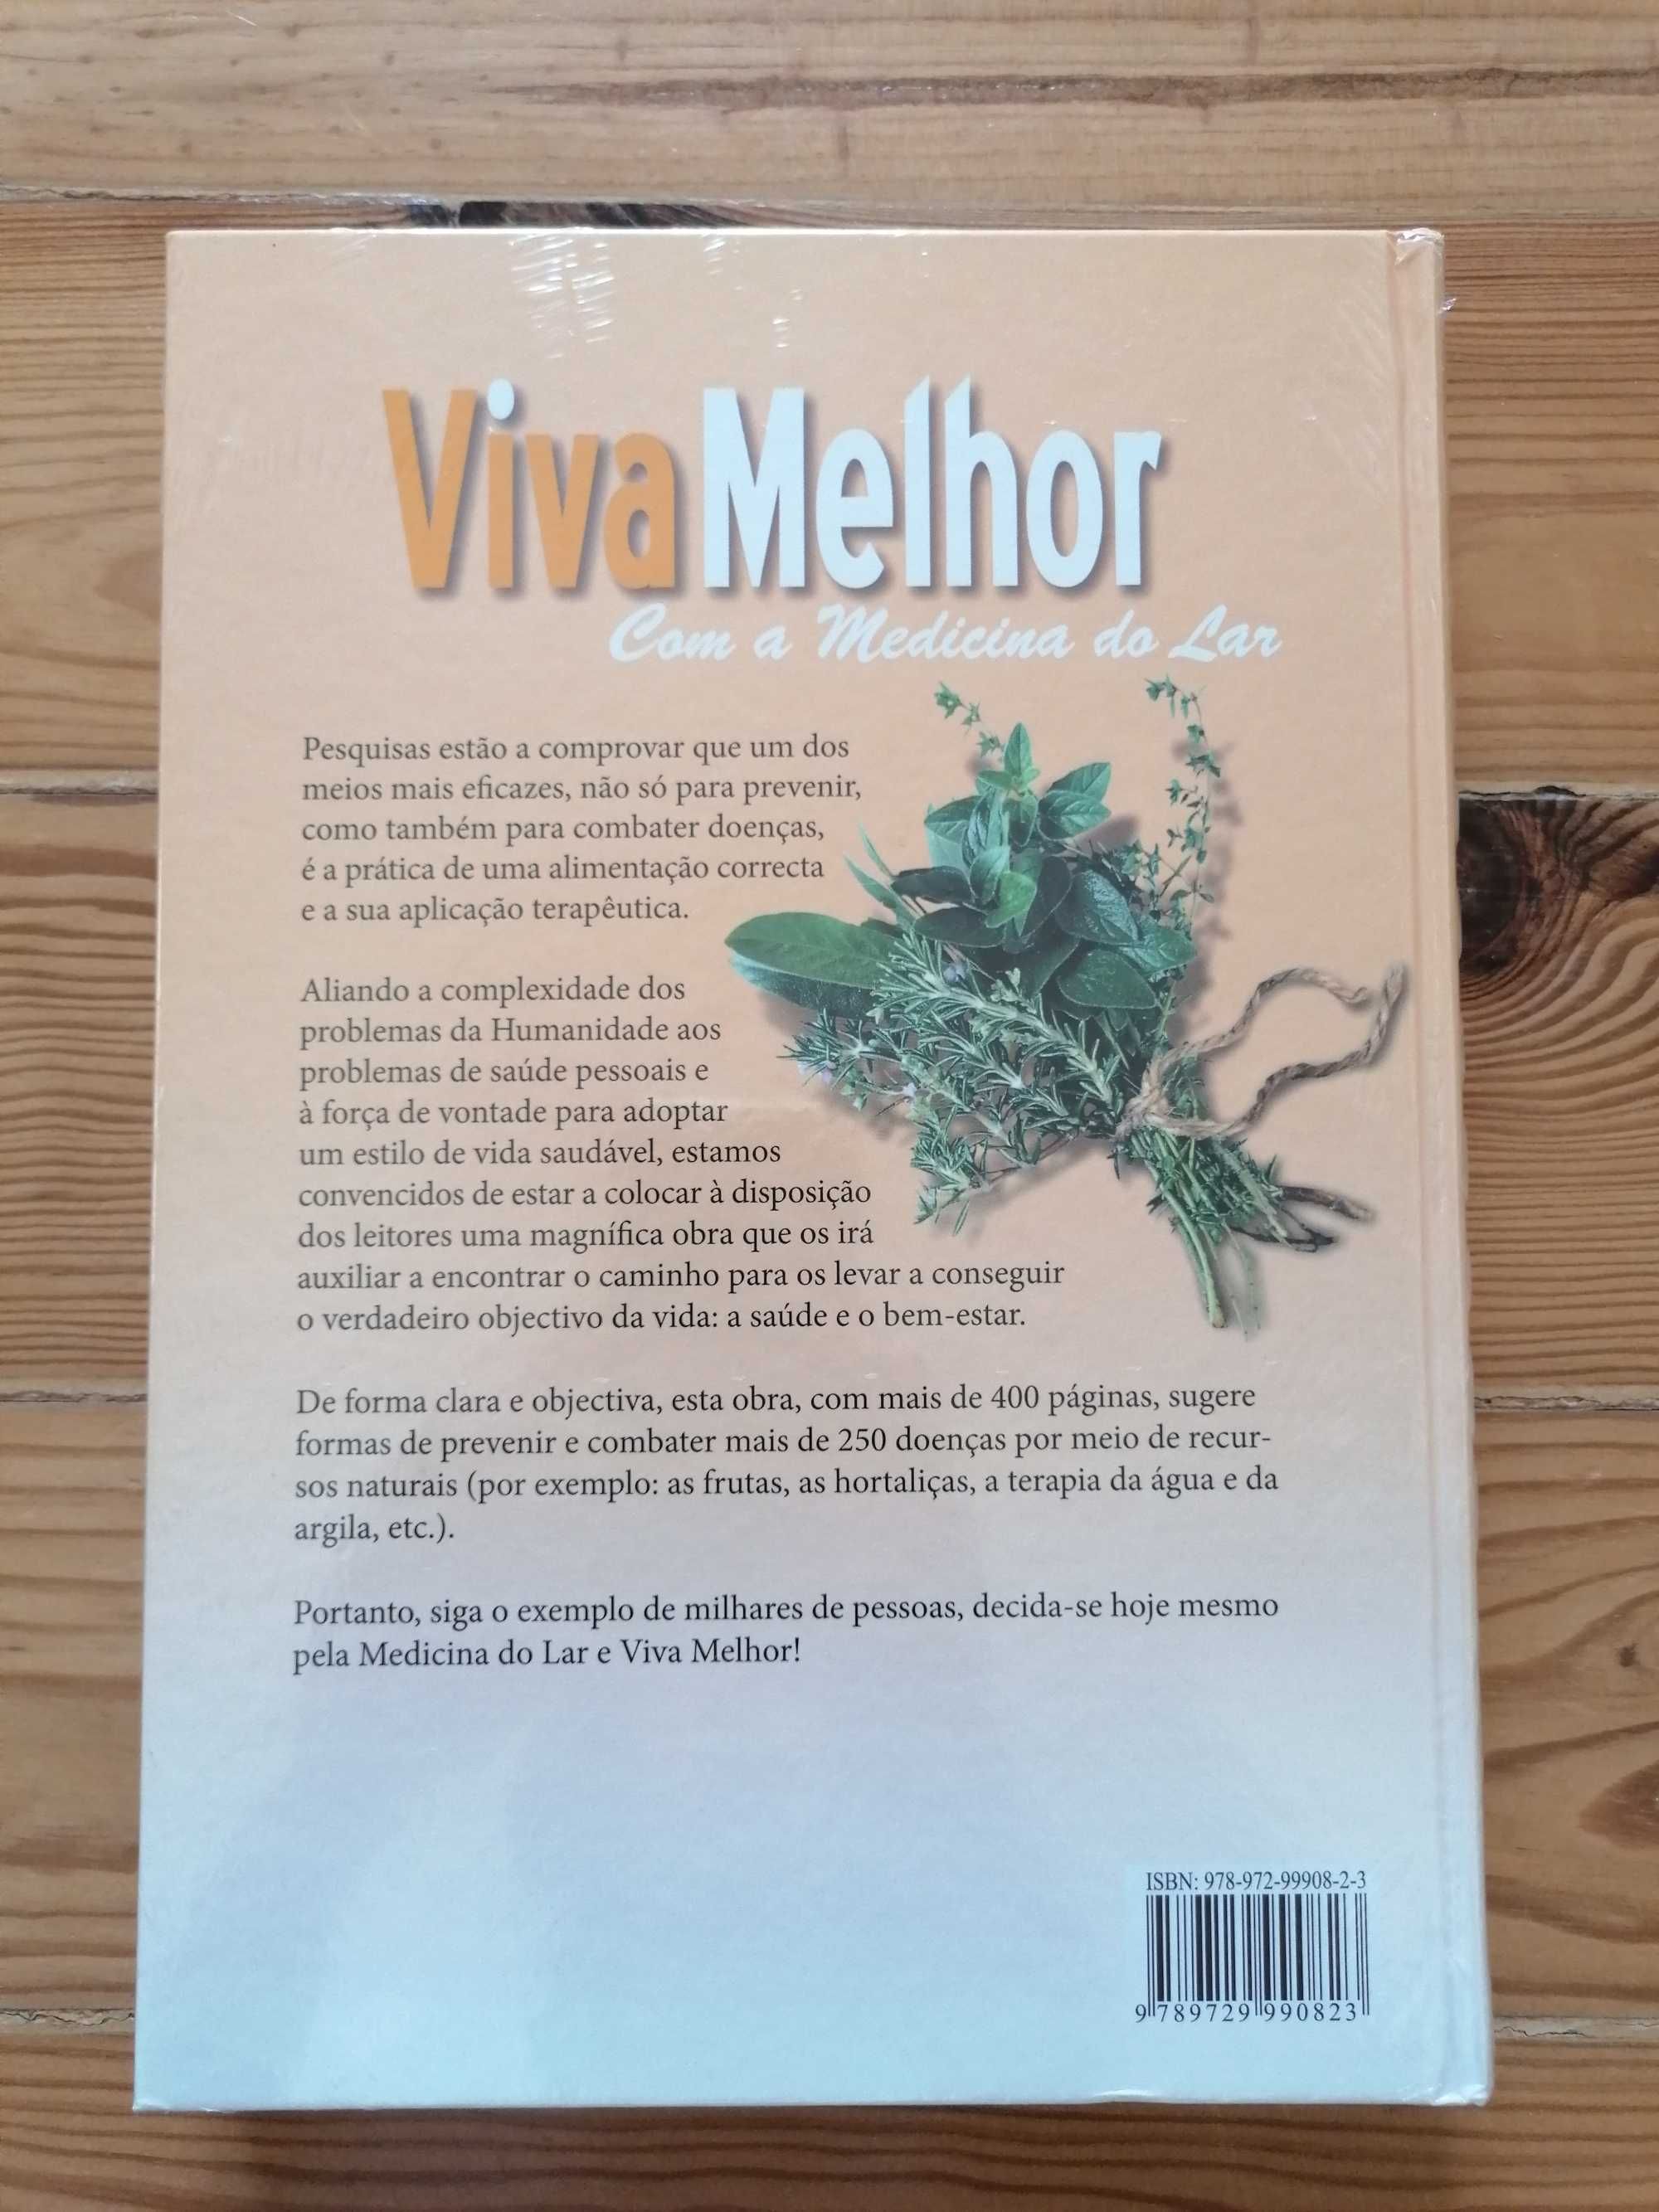 Livro "Viva Melhor" - medicina do lar - Novo (embalado)